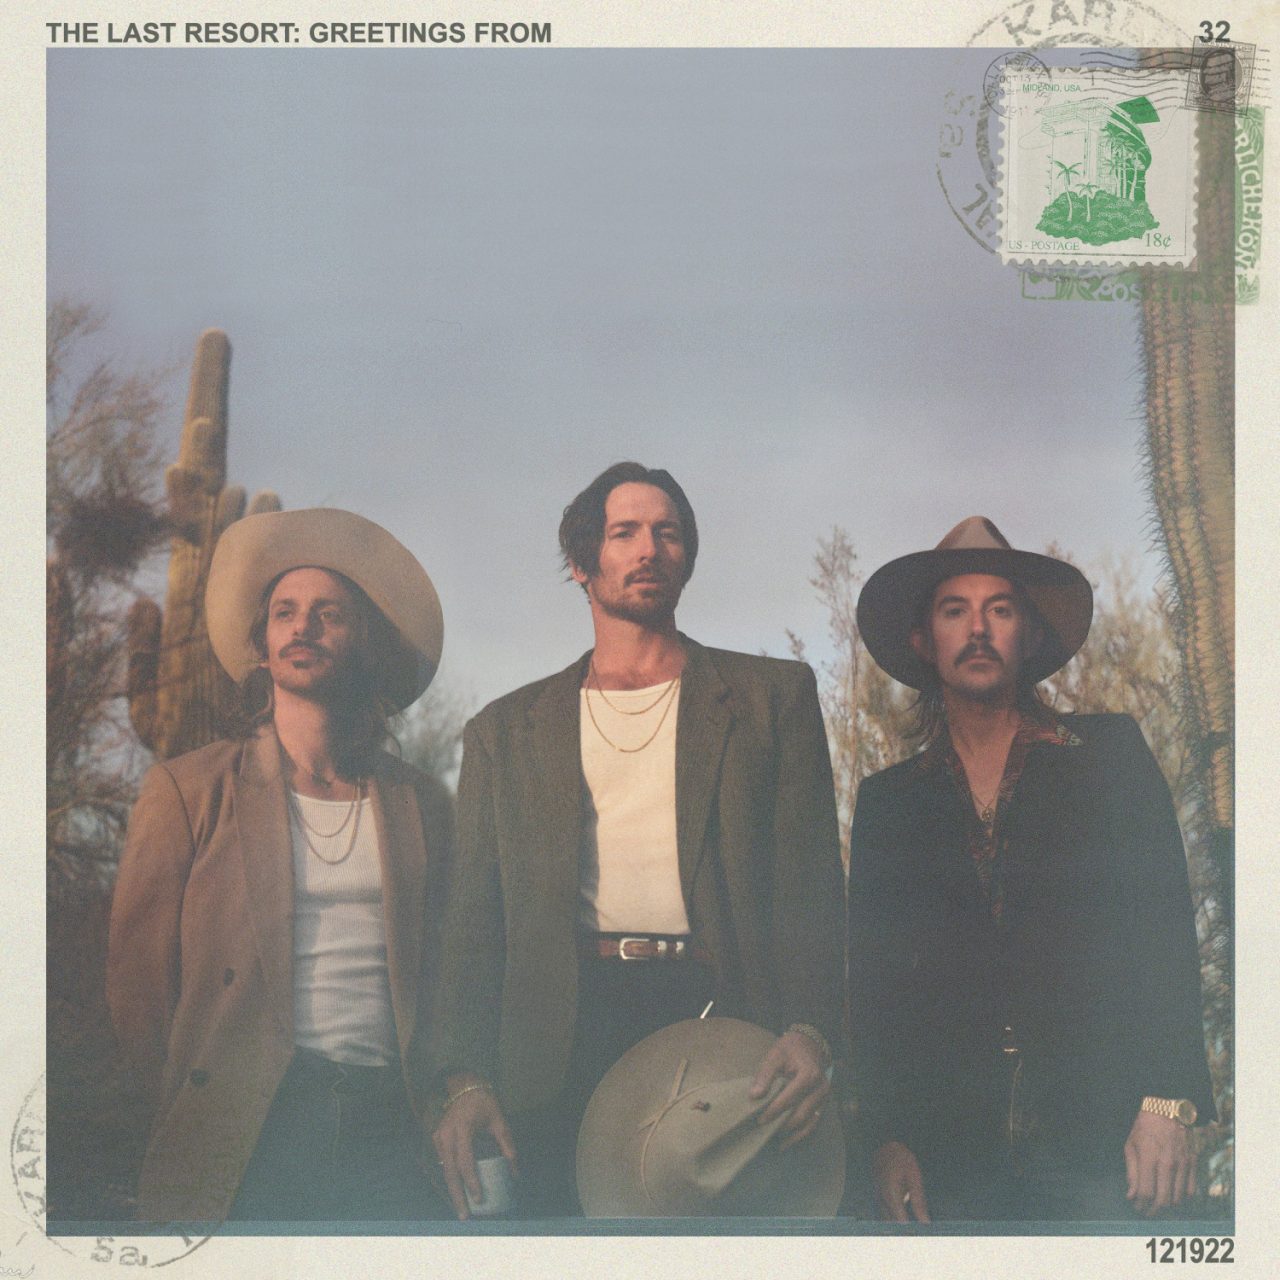 Das Albumcover "The Last Resort: Greetings From" von Midland zeigt die drei Jungs vor Kakteen. Das Cover ist wie eine alte Postkarte gemacht. Es enthält sogar in der Ecke oben rechts eine Briefmarke.